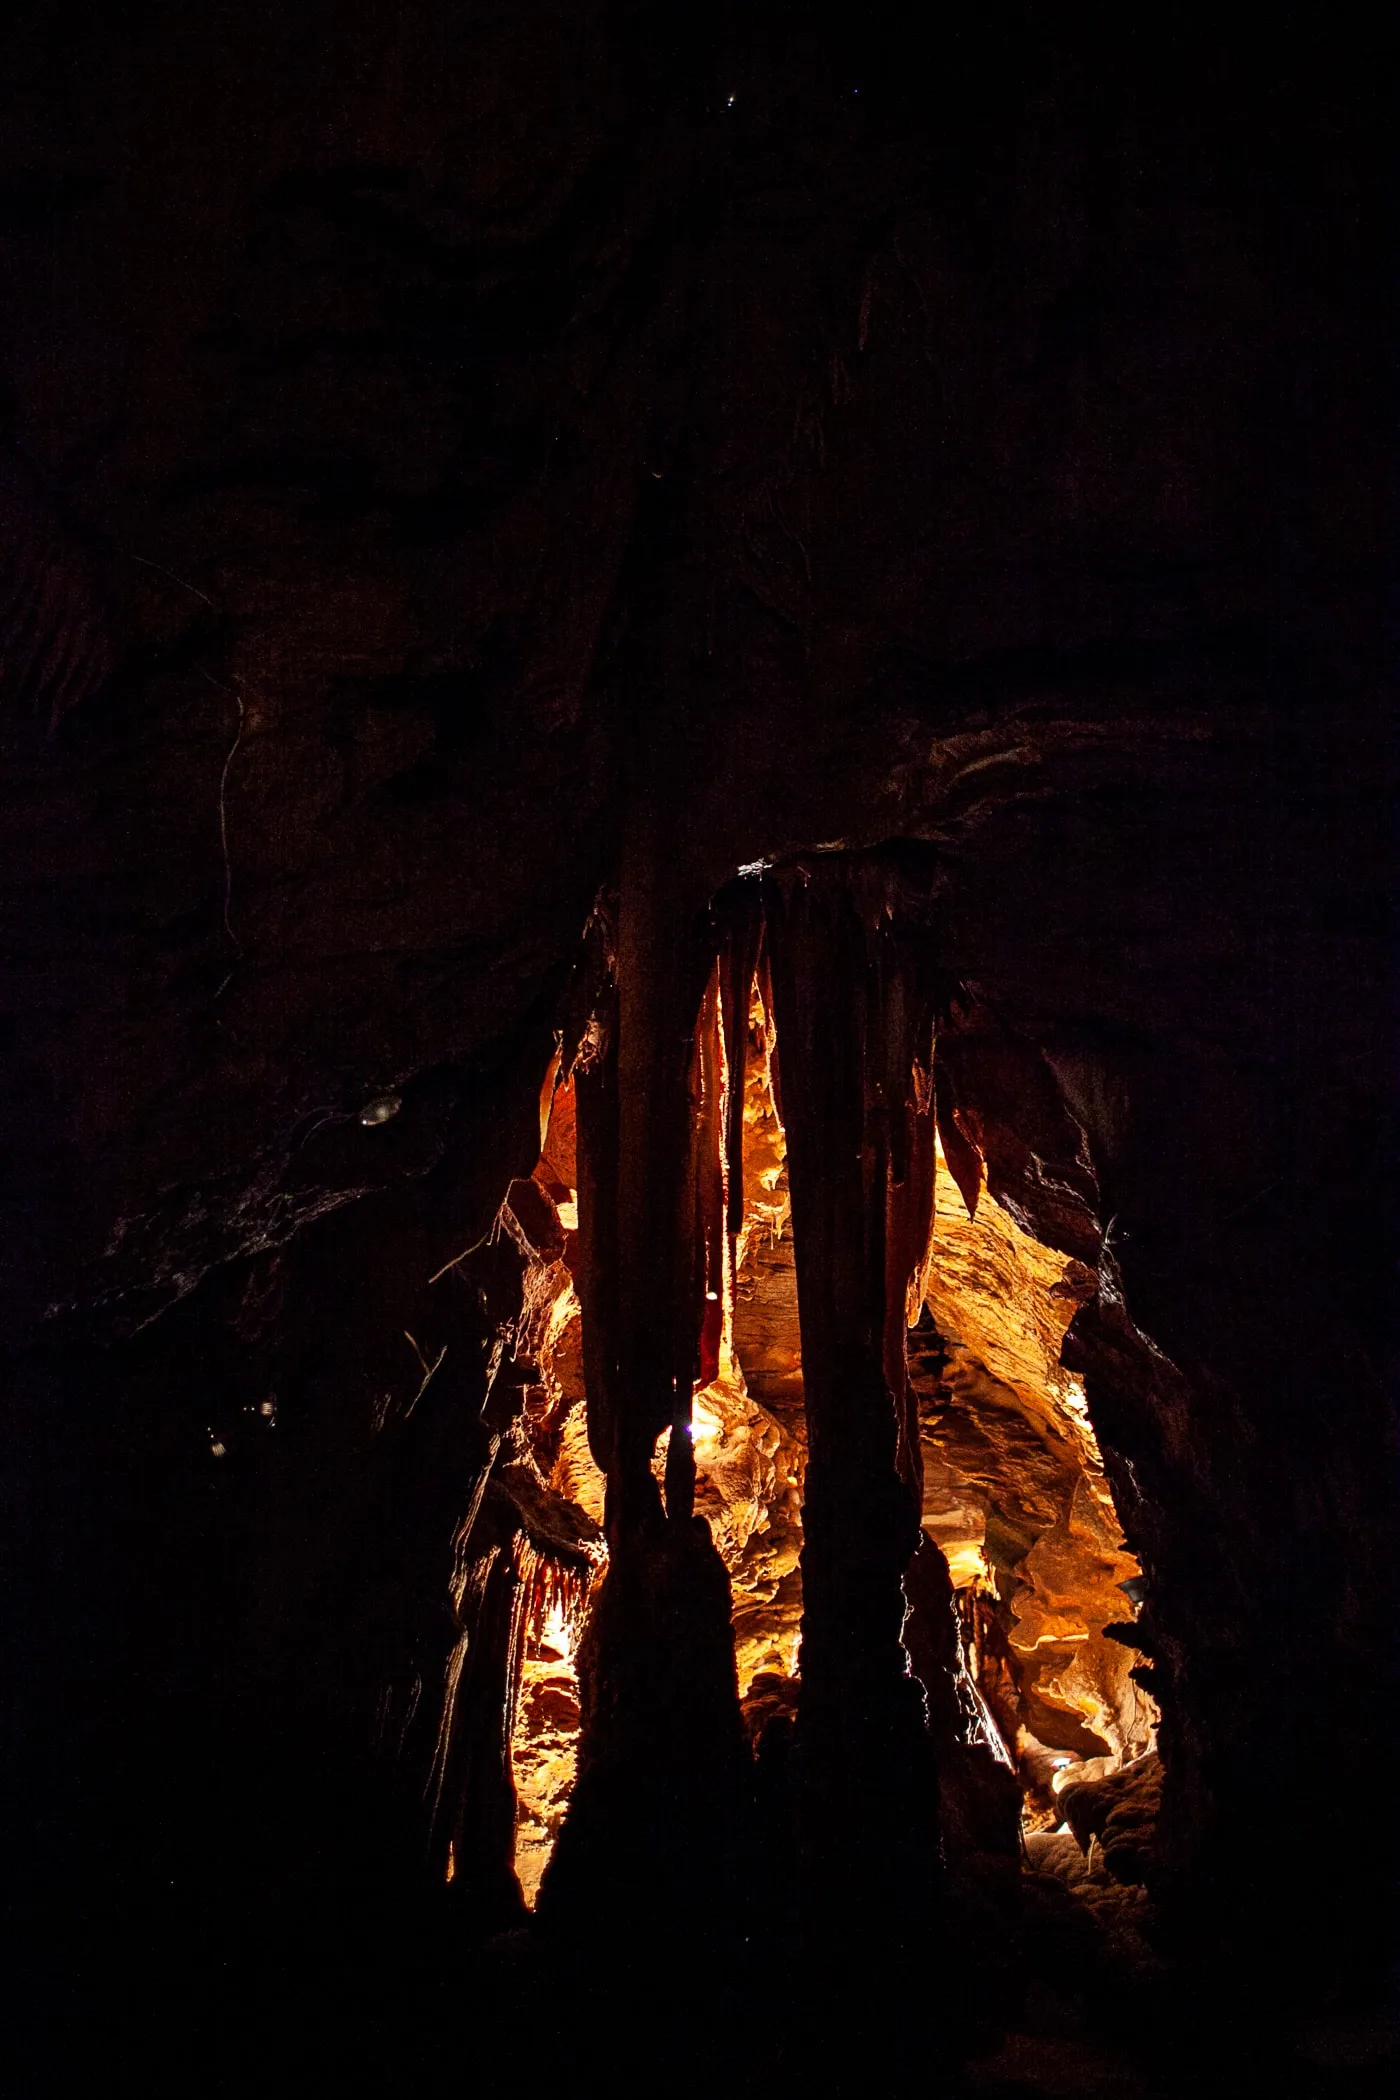 Shenandoah Caverns in Quicksburg, Virginia.